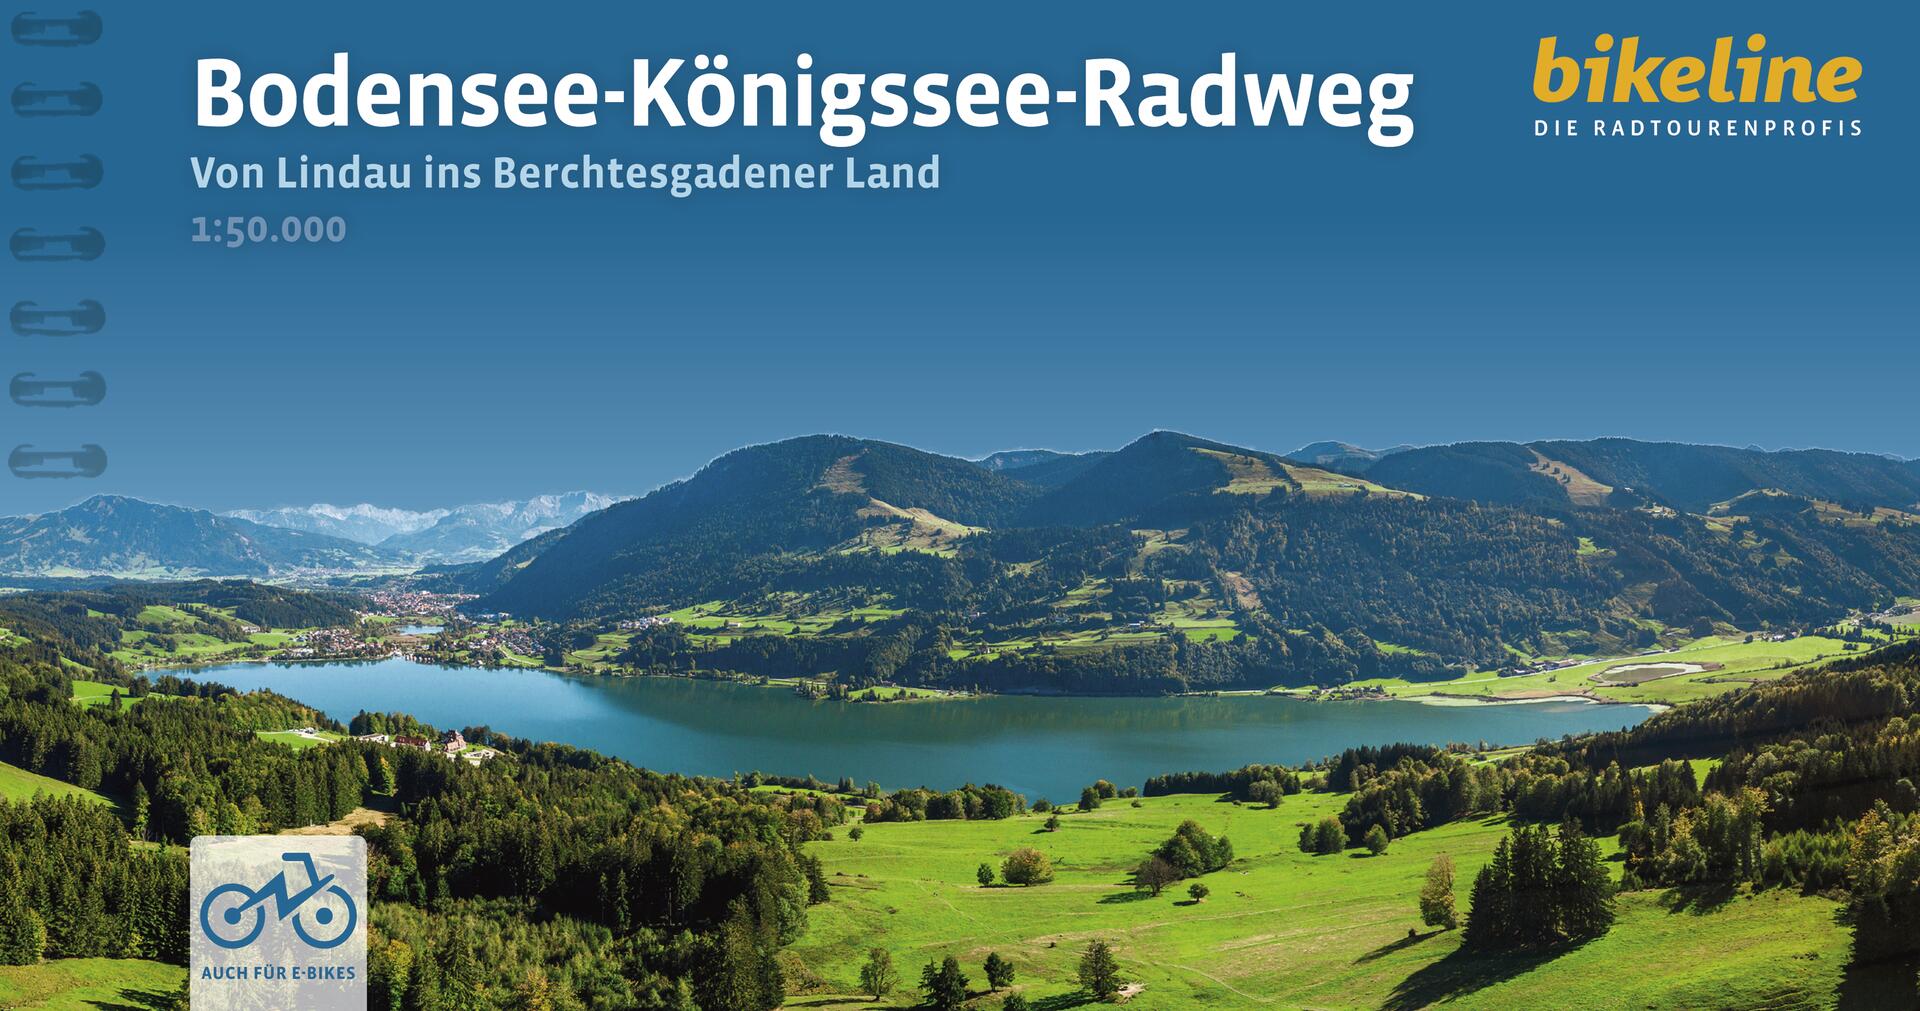 Bodensee-Königssee-Radweg - Bikeline Radtourenbuch